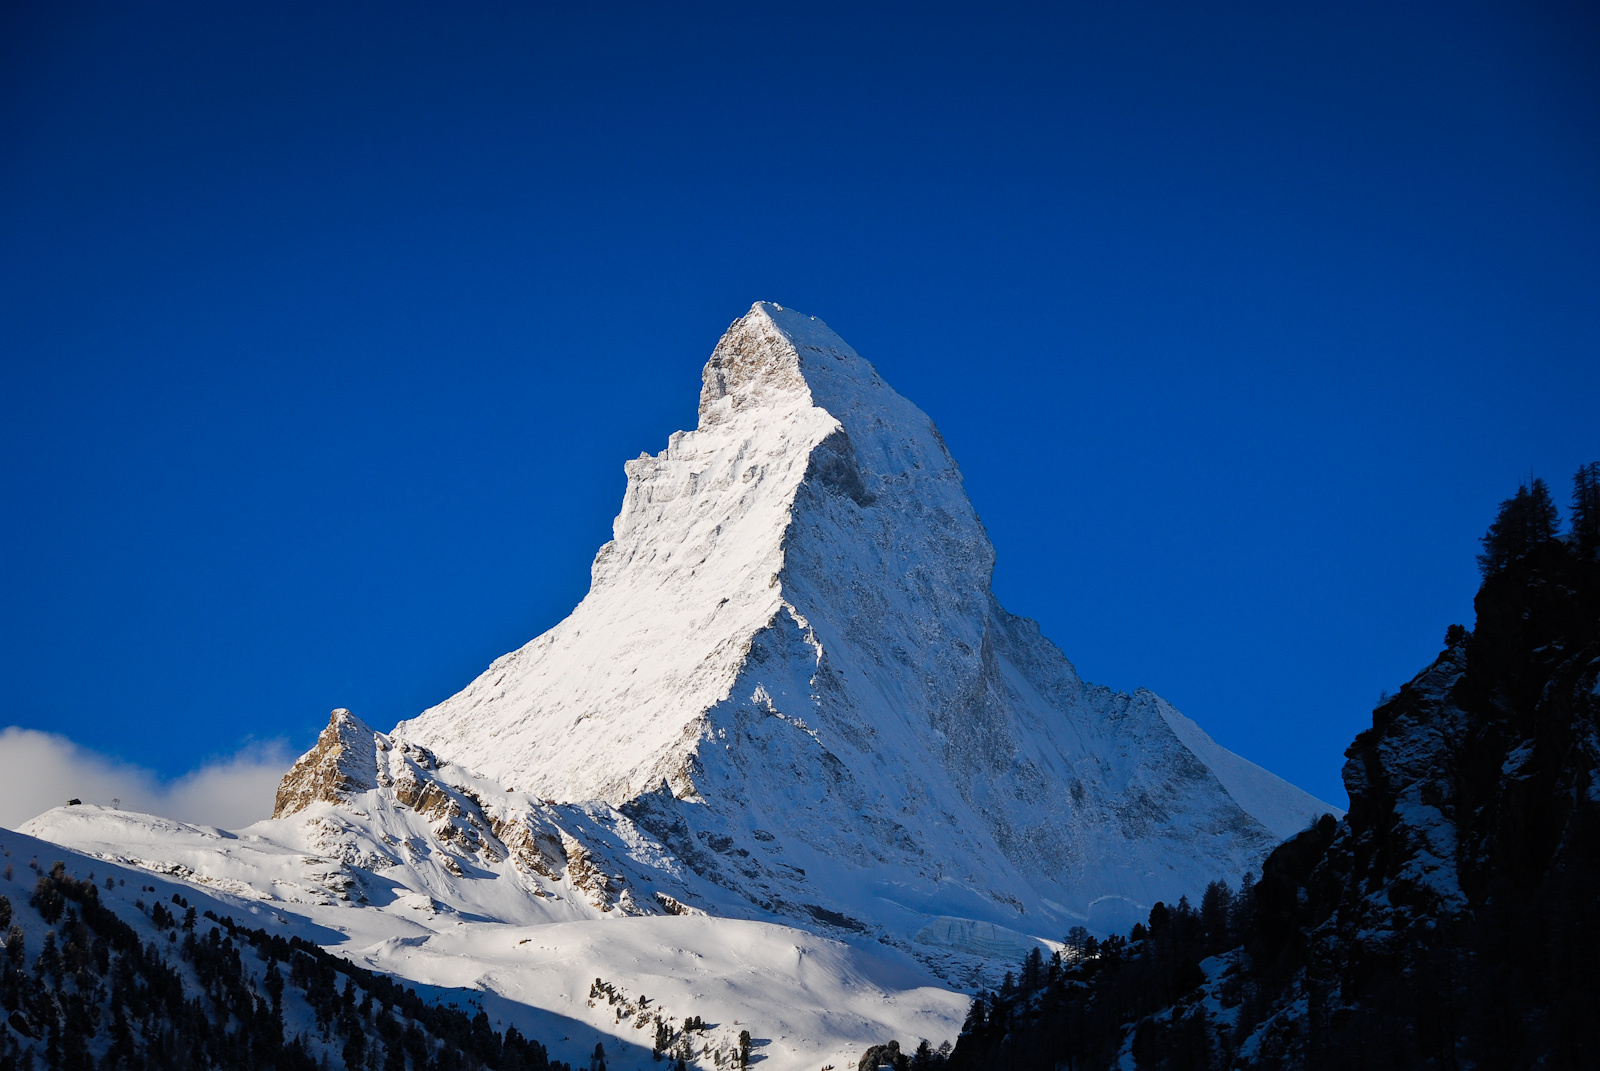 Matterhorn/Cervino 4478m